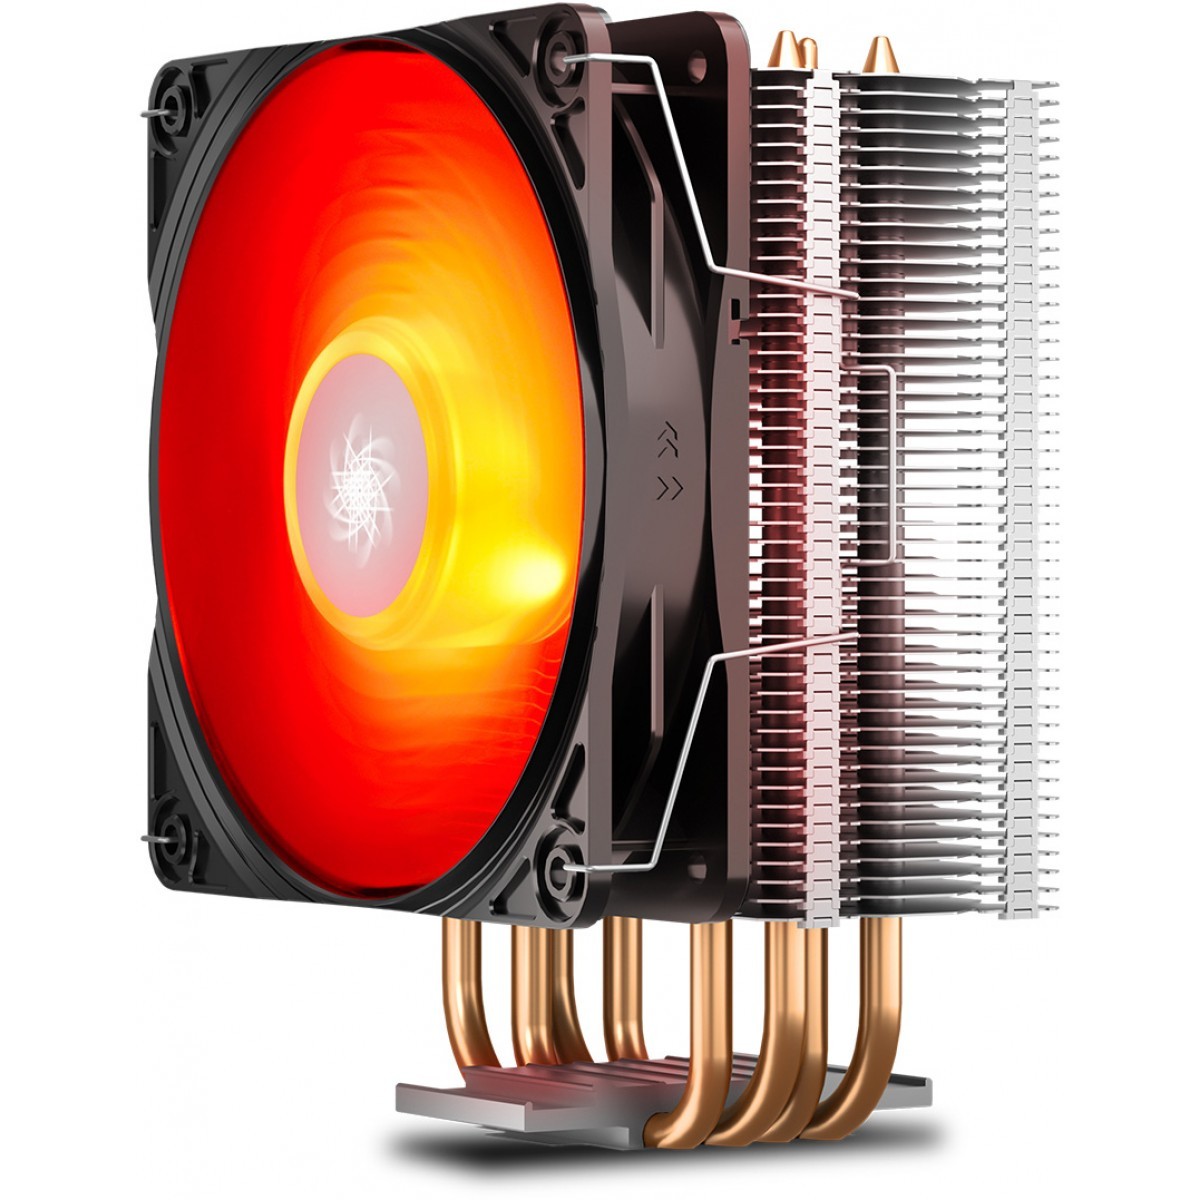 Processador AMD Ryzen 5 5600X 4.6GHz + Cooler DeepCool Gammaxx 400 V2 Red